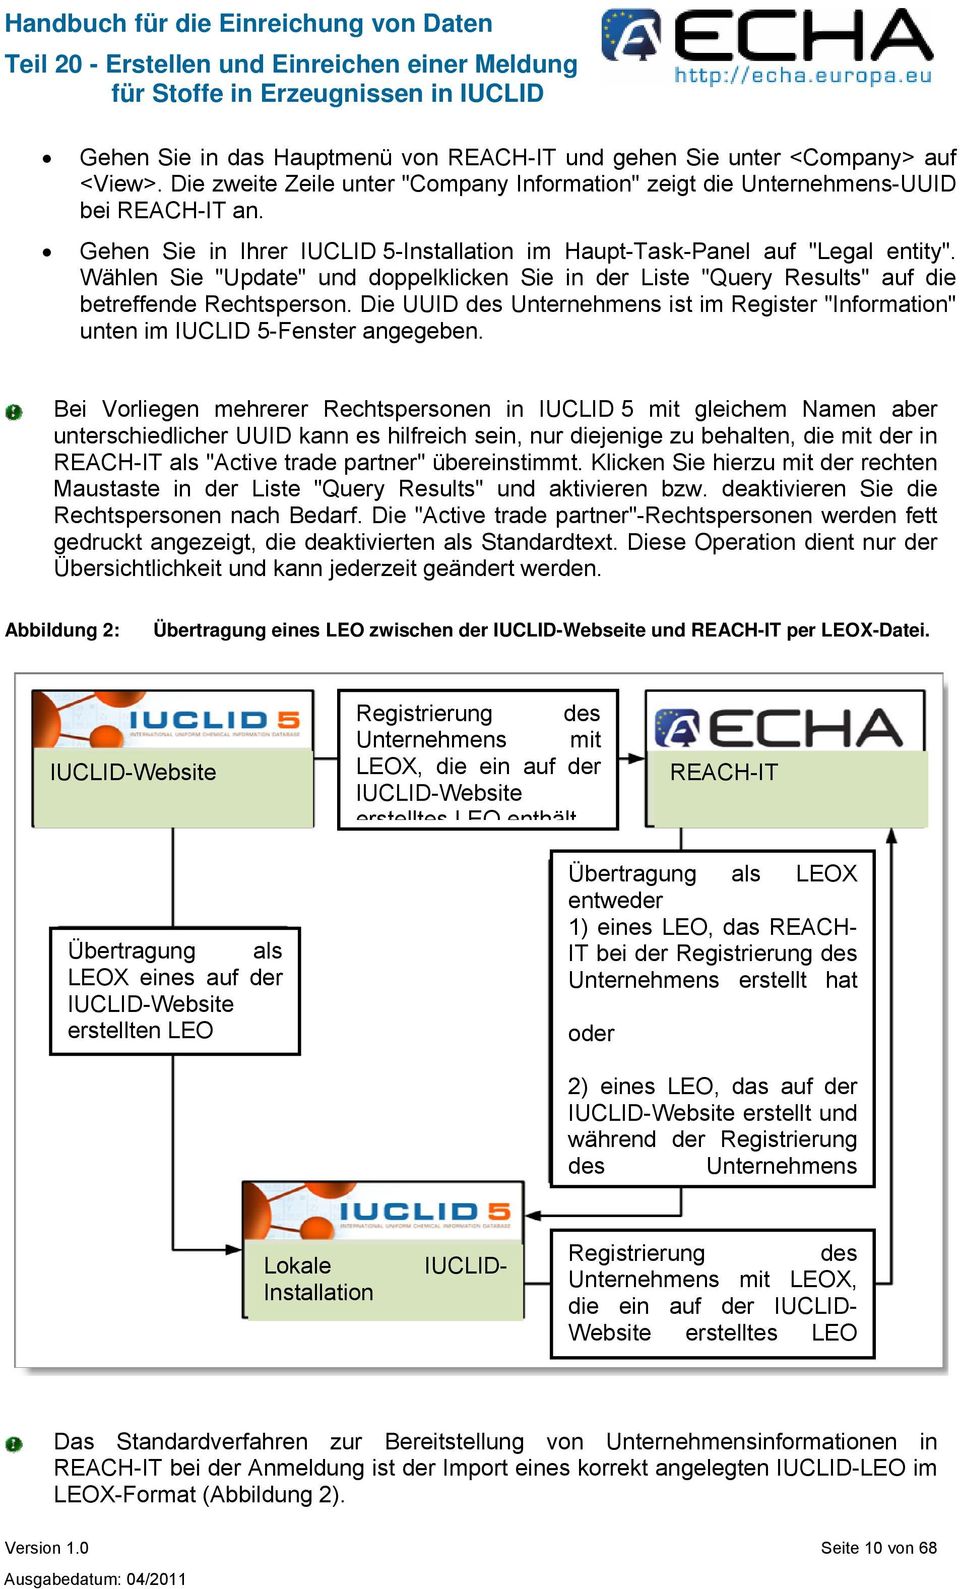 Die UUID des Unternehmens ist im Register "Information" unten im IUCLID 5-Fenster angegeben.